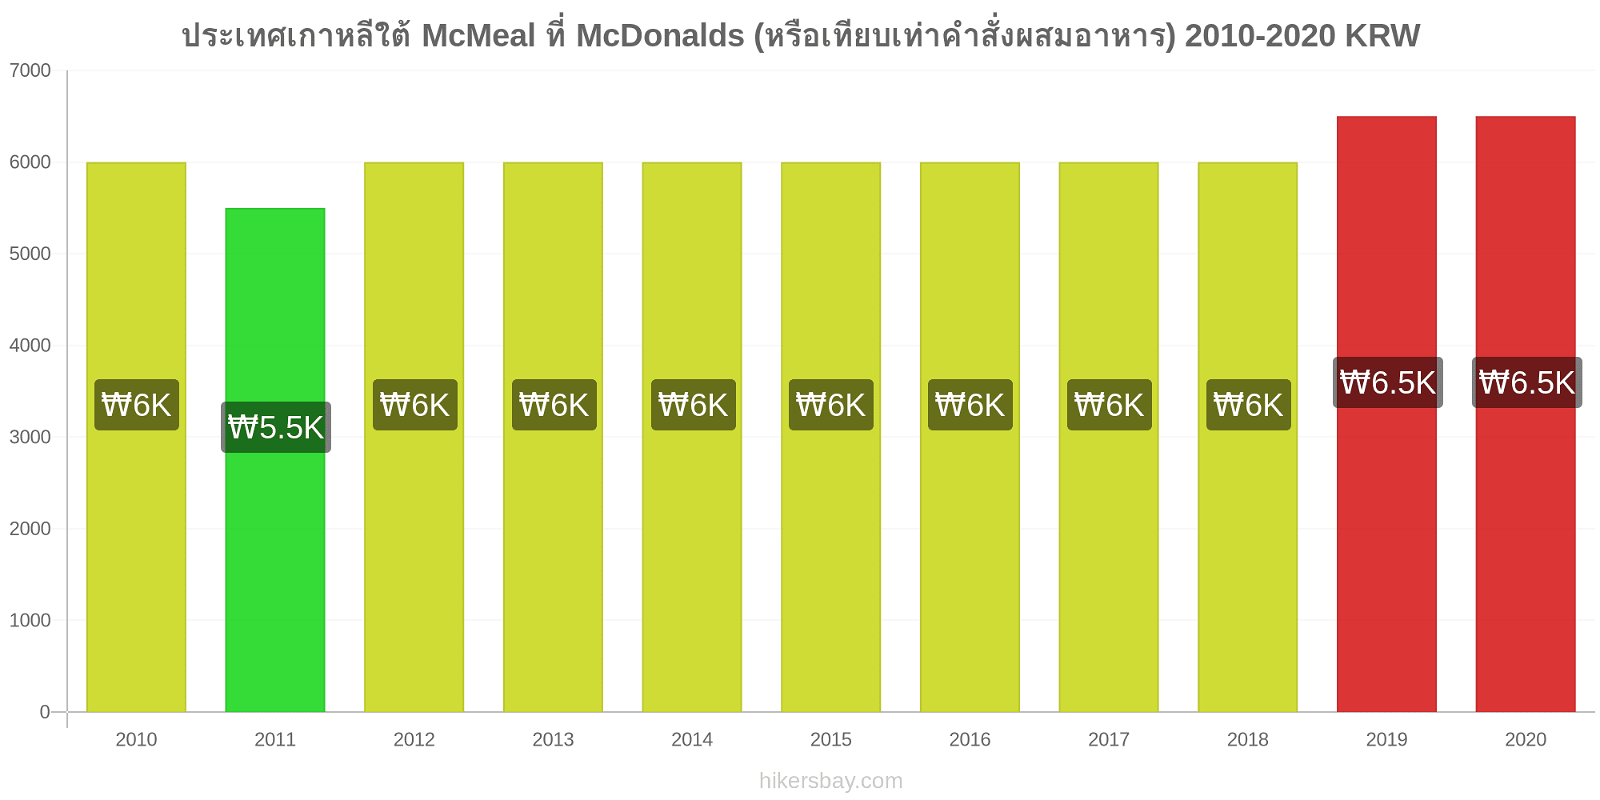 ประเทศเกาหลีใต้ การเปลี่ยนแปลงราคา McMeal ที่ McDonalds (หรือเทียบเท่าคำสั่งผสมอาหาร) hikersbay.com